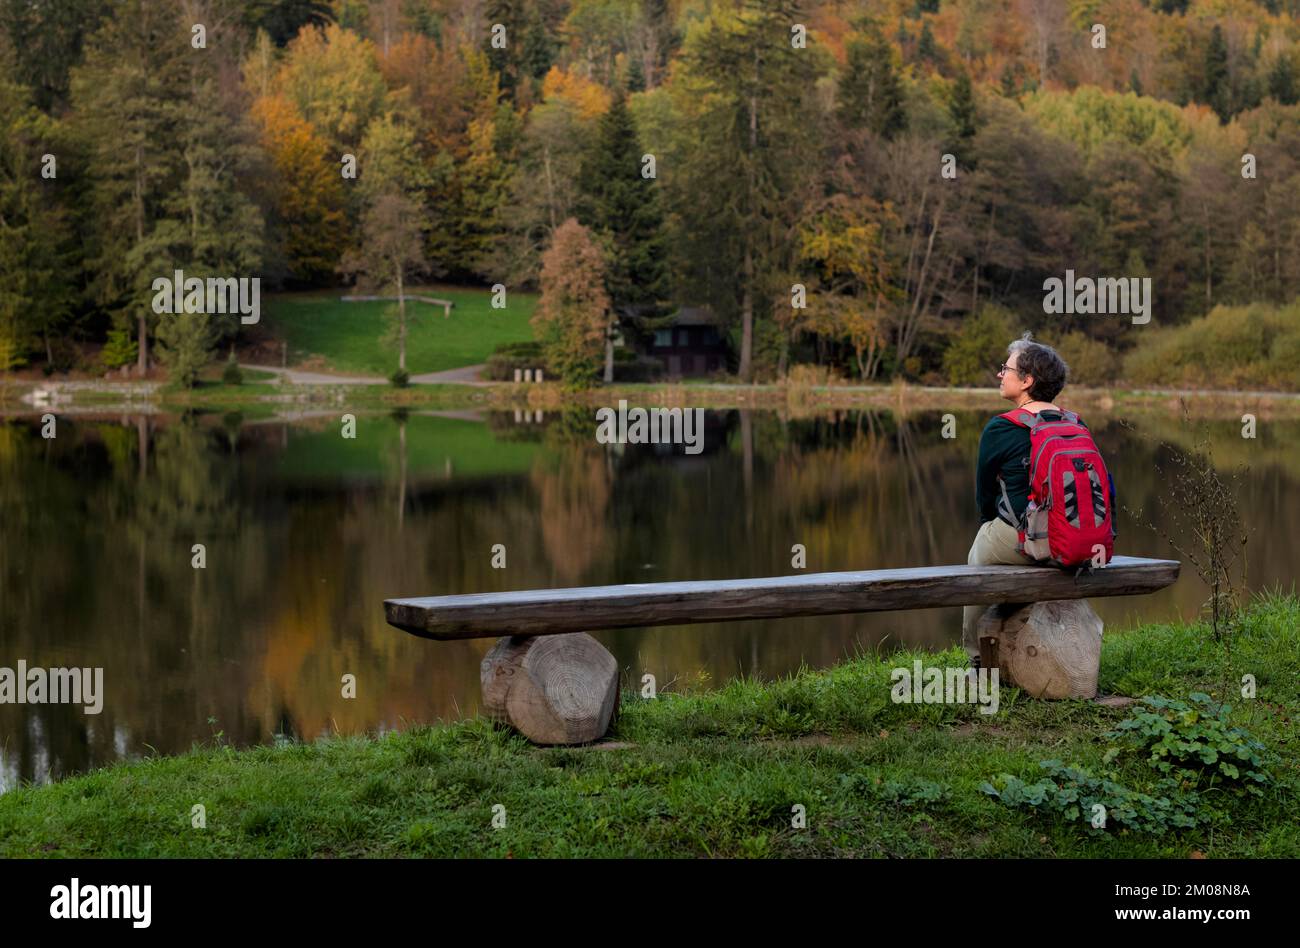 Femme plus âgée avec sac à dos, Best Ager, assis seul sur un banc en bois, Ebnisee, Kaisersbach, automne, forêt souabe, Bade-Wurtemberg, Allemagne, Europe Banque D'Images